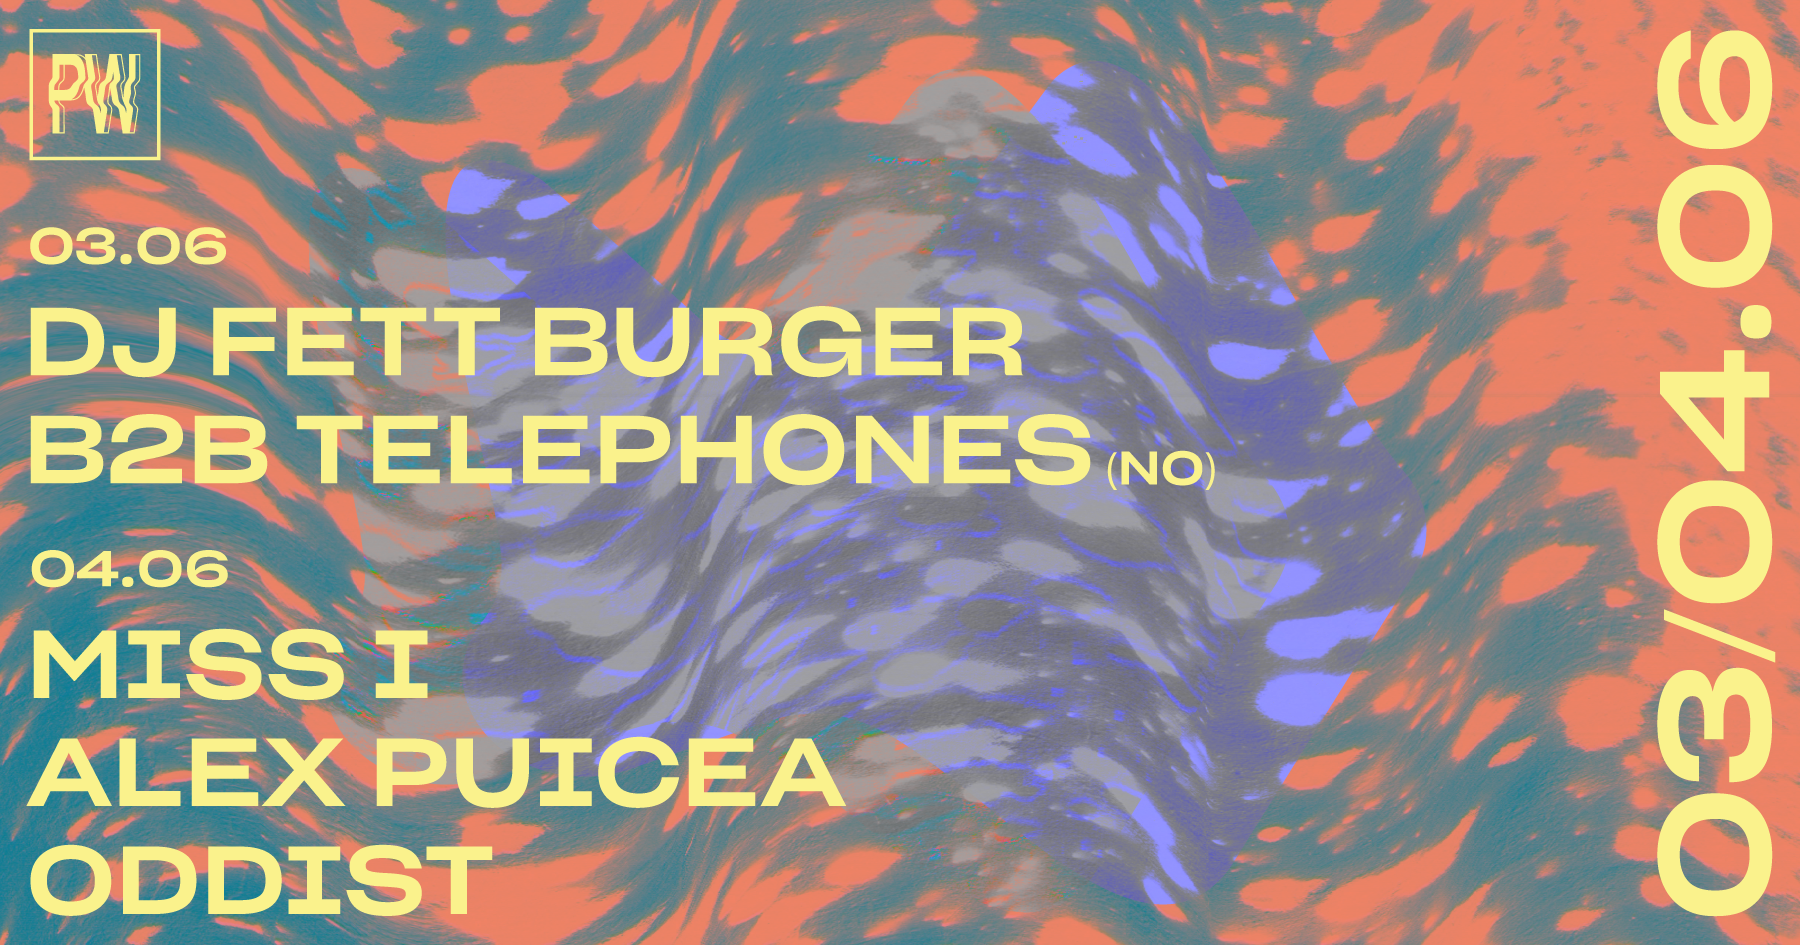 DJ Fett Burger b2b Telephones • Miss I, Alex Puicea, oddist - フライヤー表